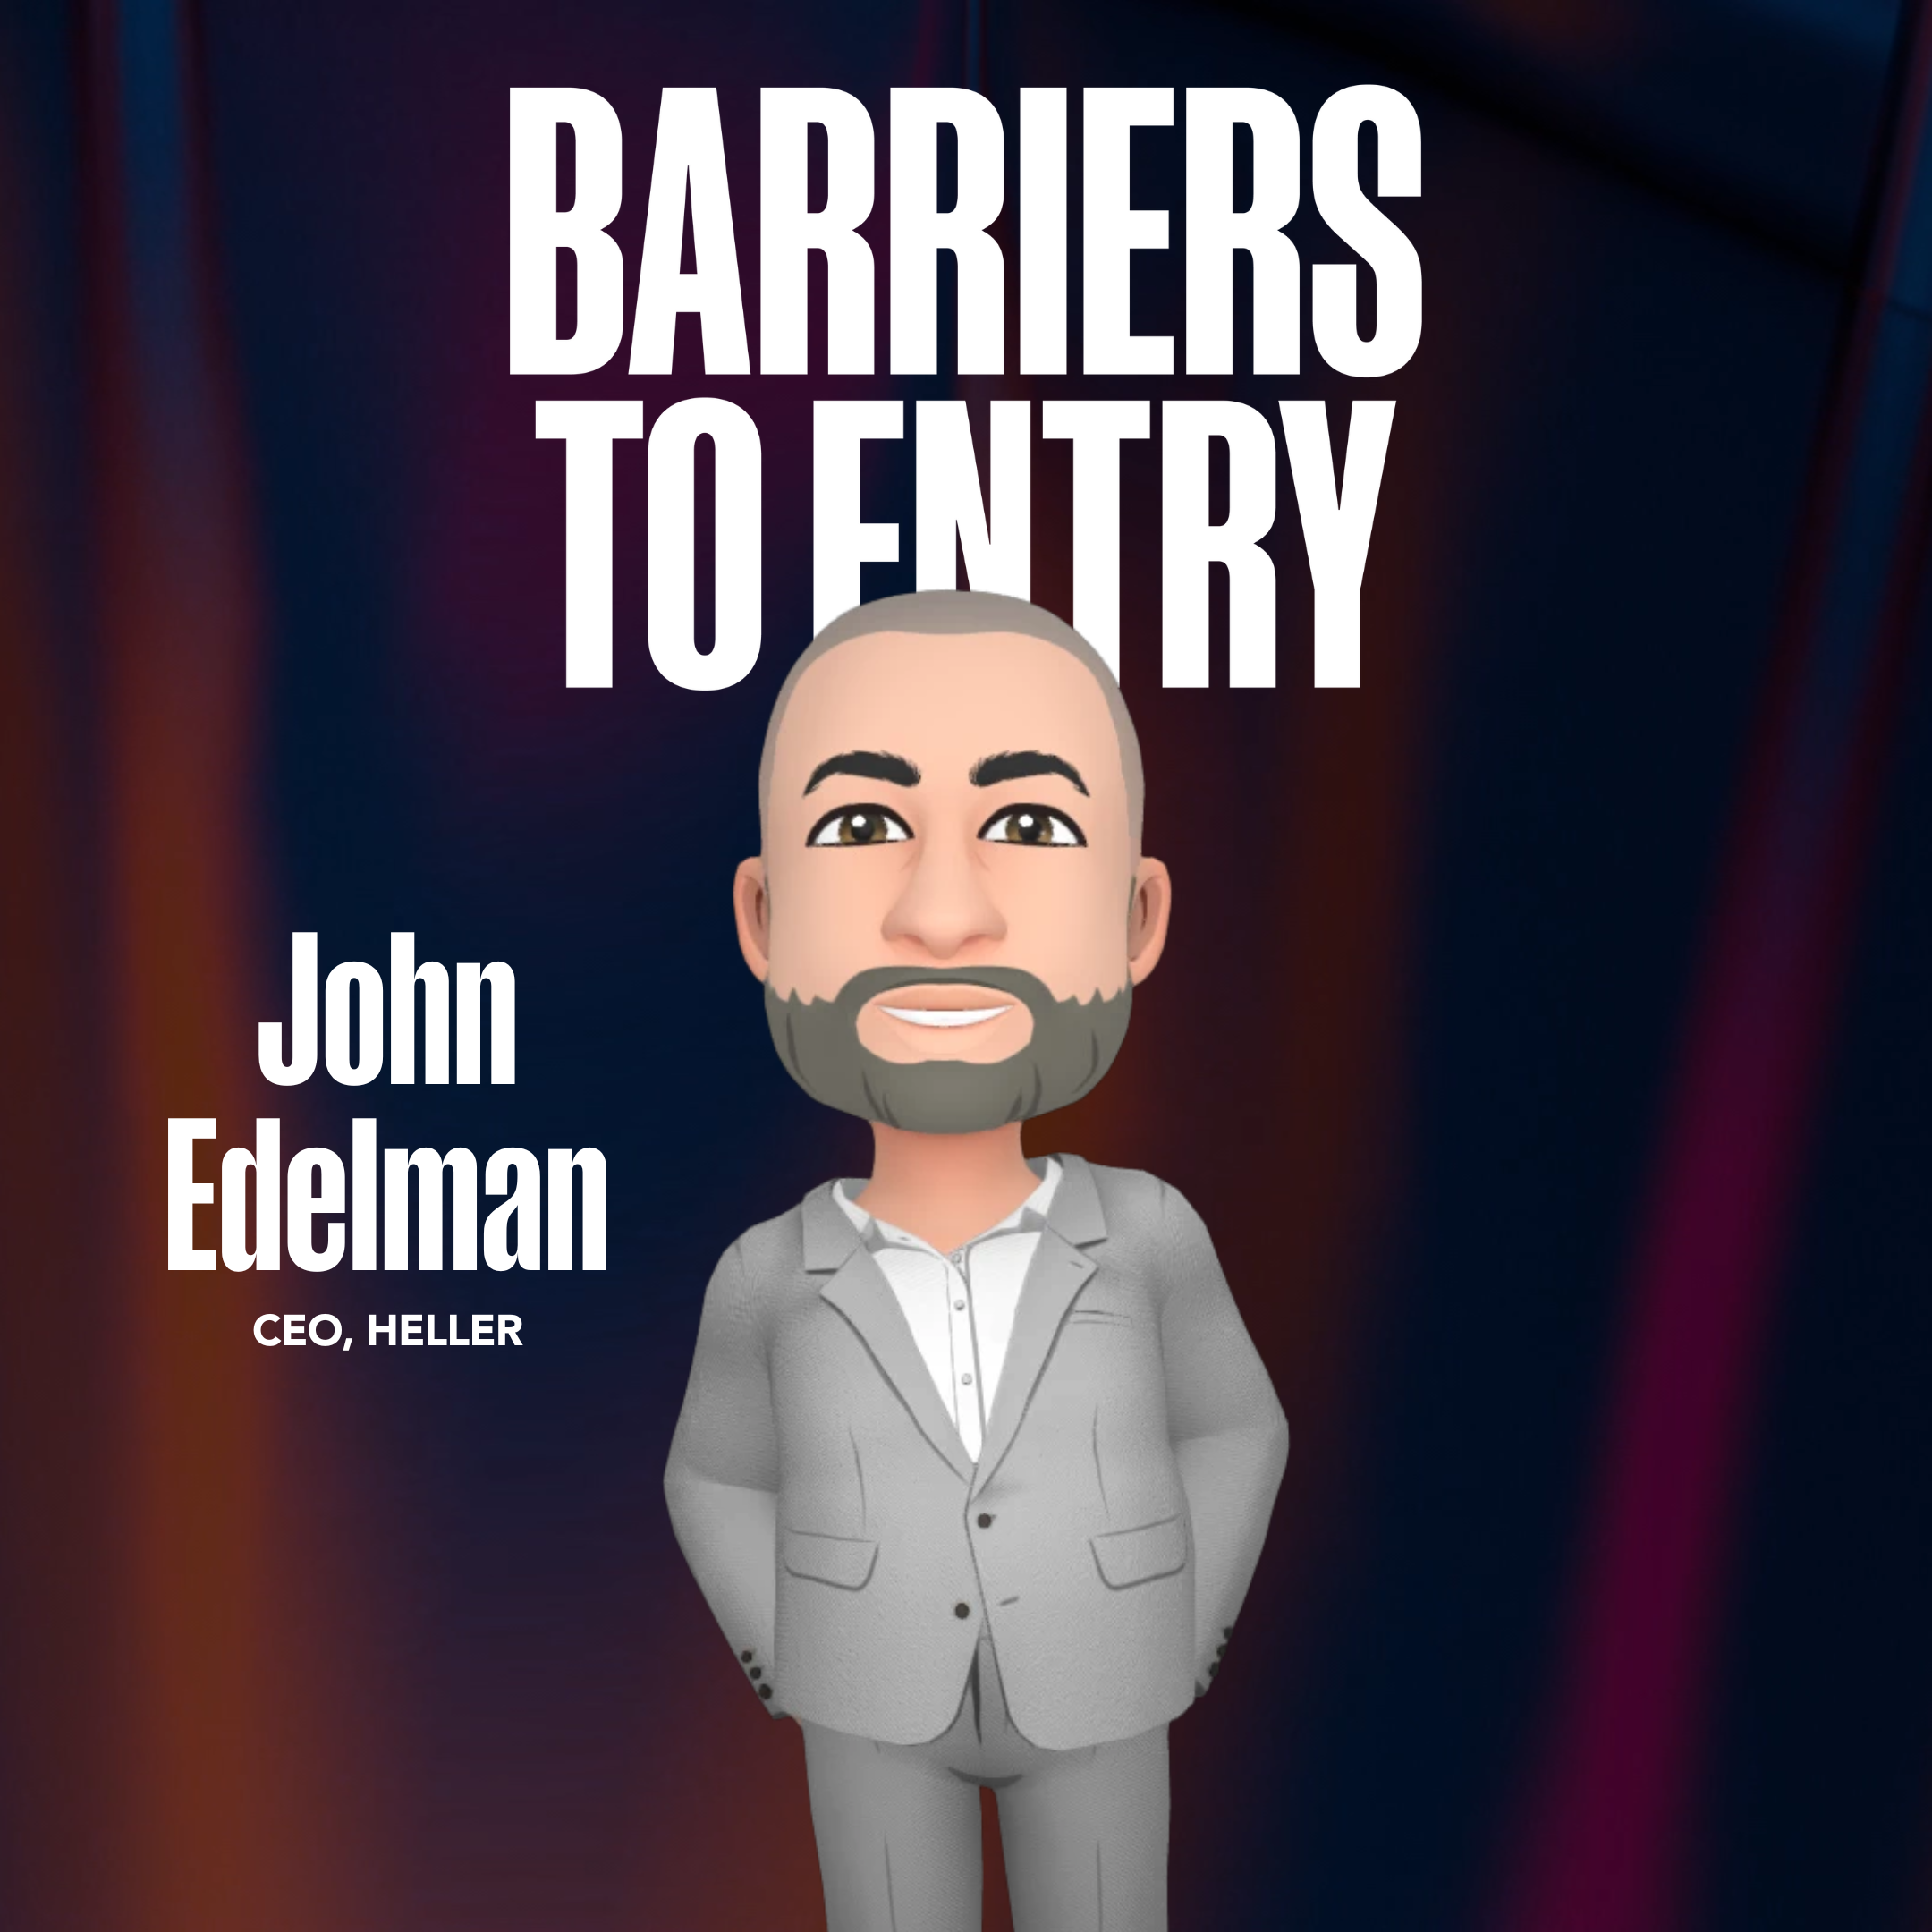 Episode cover artwork of John Edelman, CEO of Heller